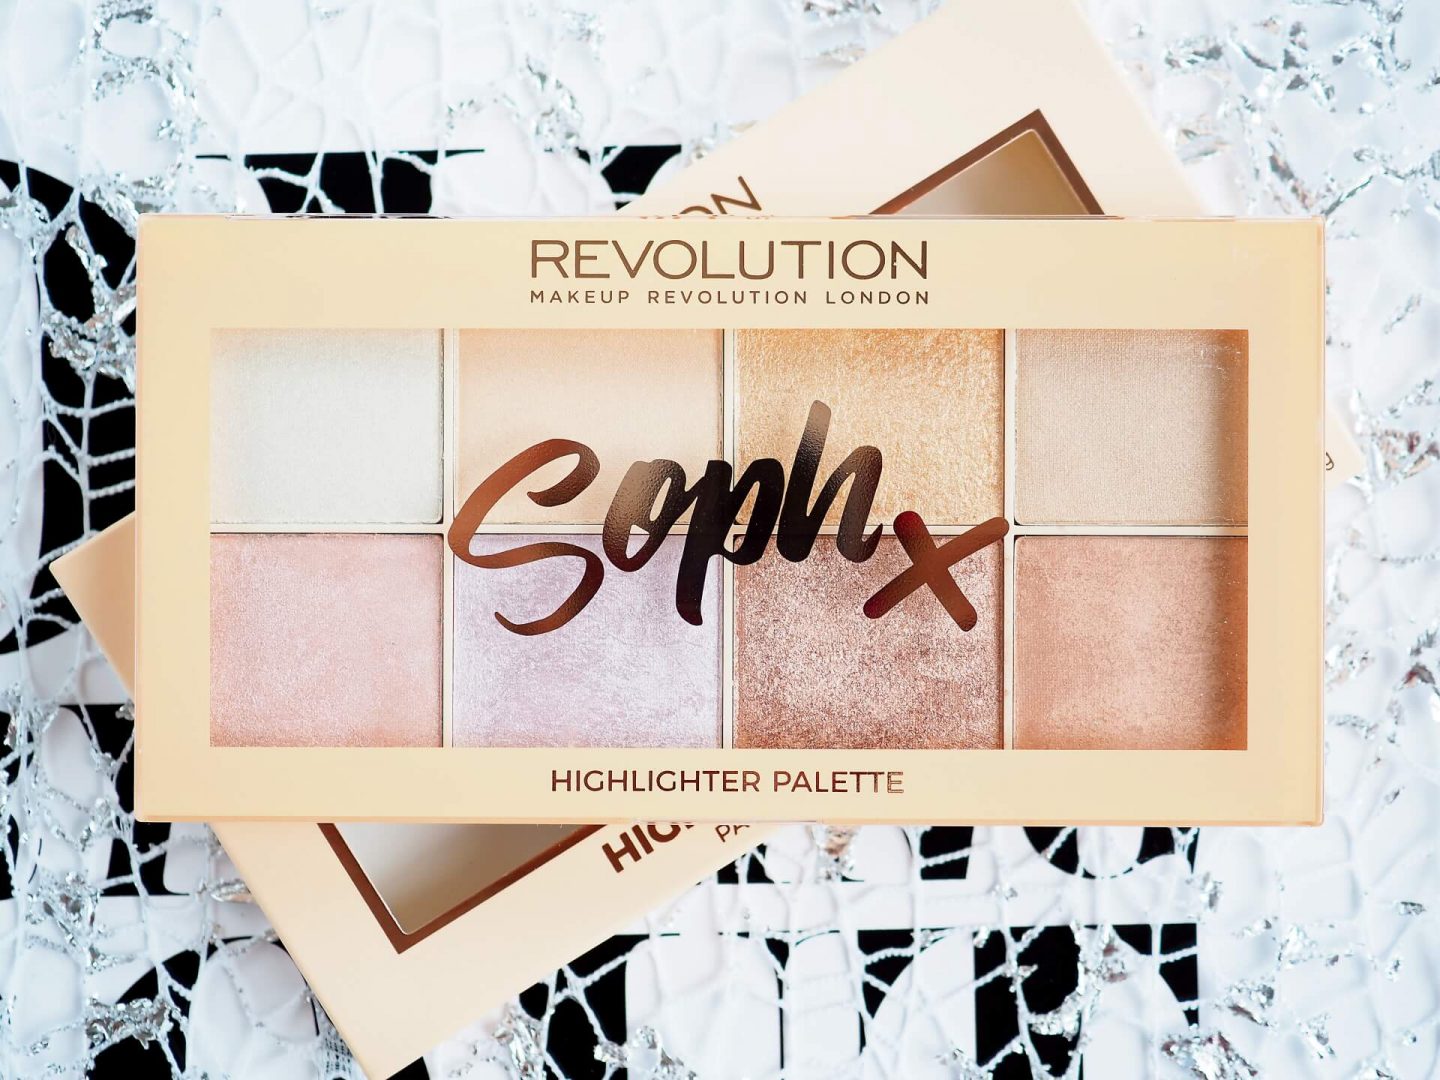 Makeup Revolution Soph X Highlighter Palette 16g ไฮไลท์เตอร์ 8 สีสุดอลัง เหมาะกับทุกสีผิว เนื้อเกลี่ยง่าย เม็ดสีกระจายแสงให้หน้าดูมีมิติสวยงาม